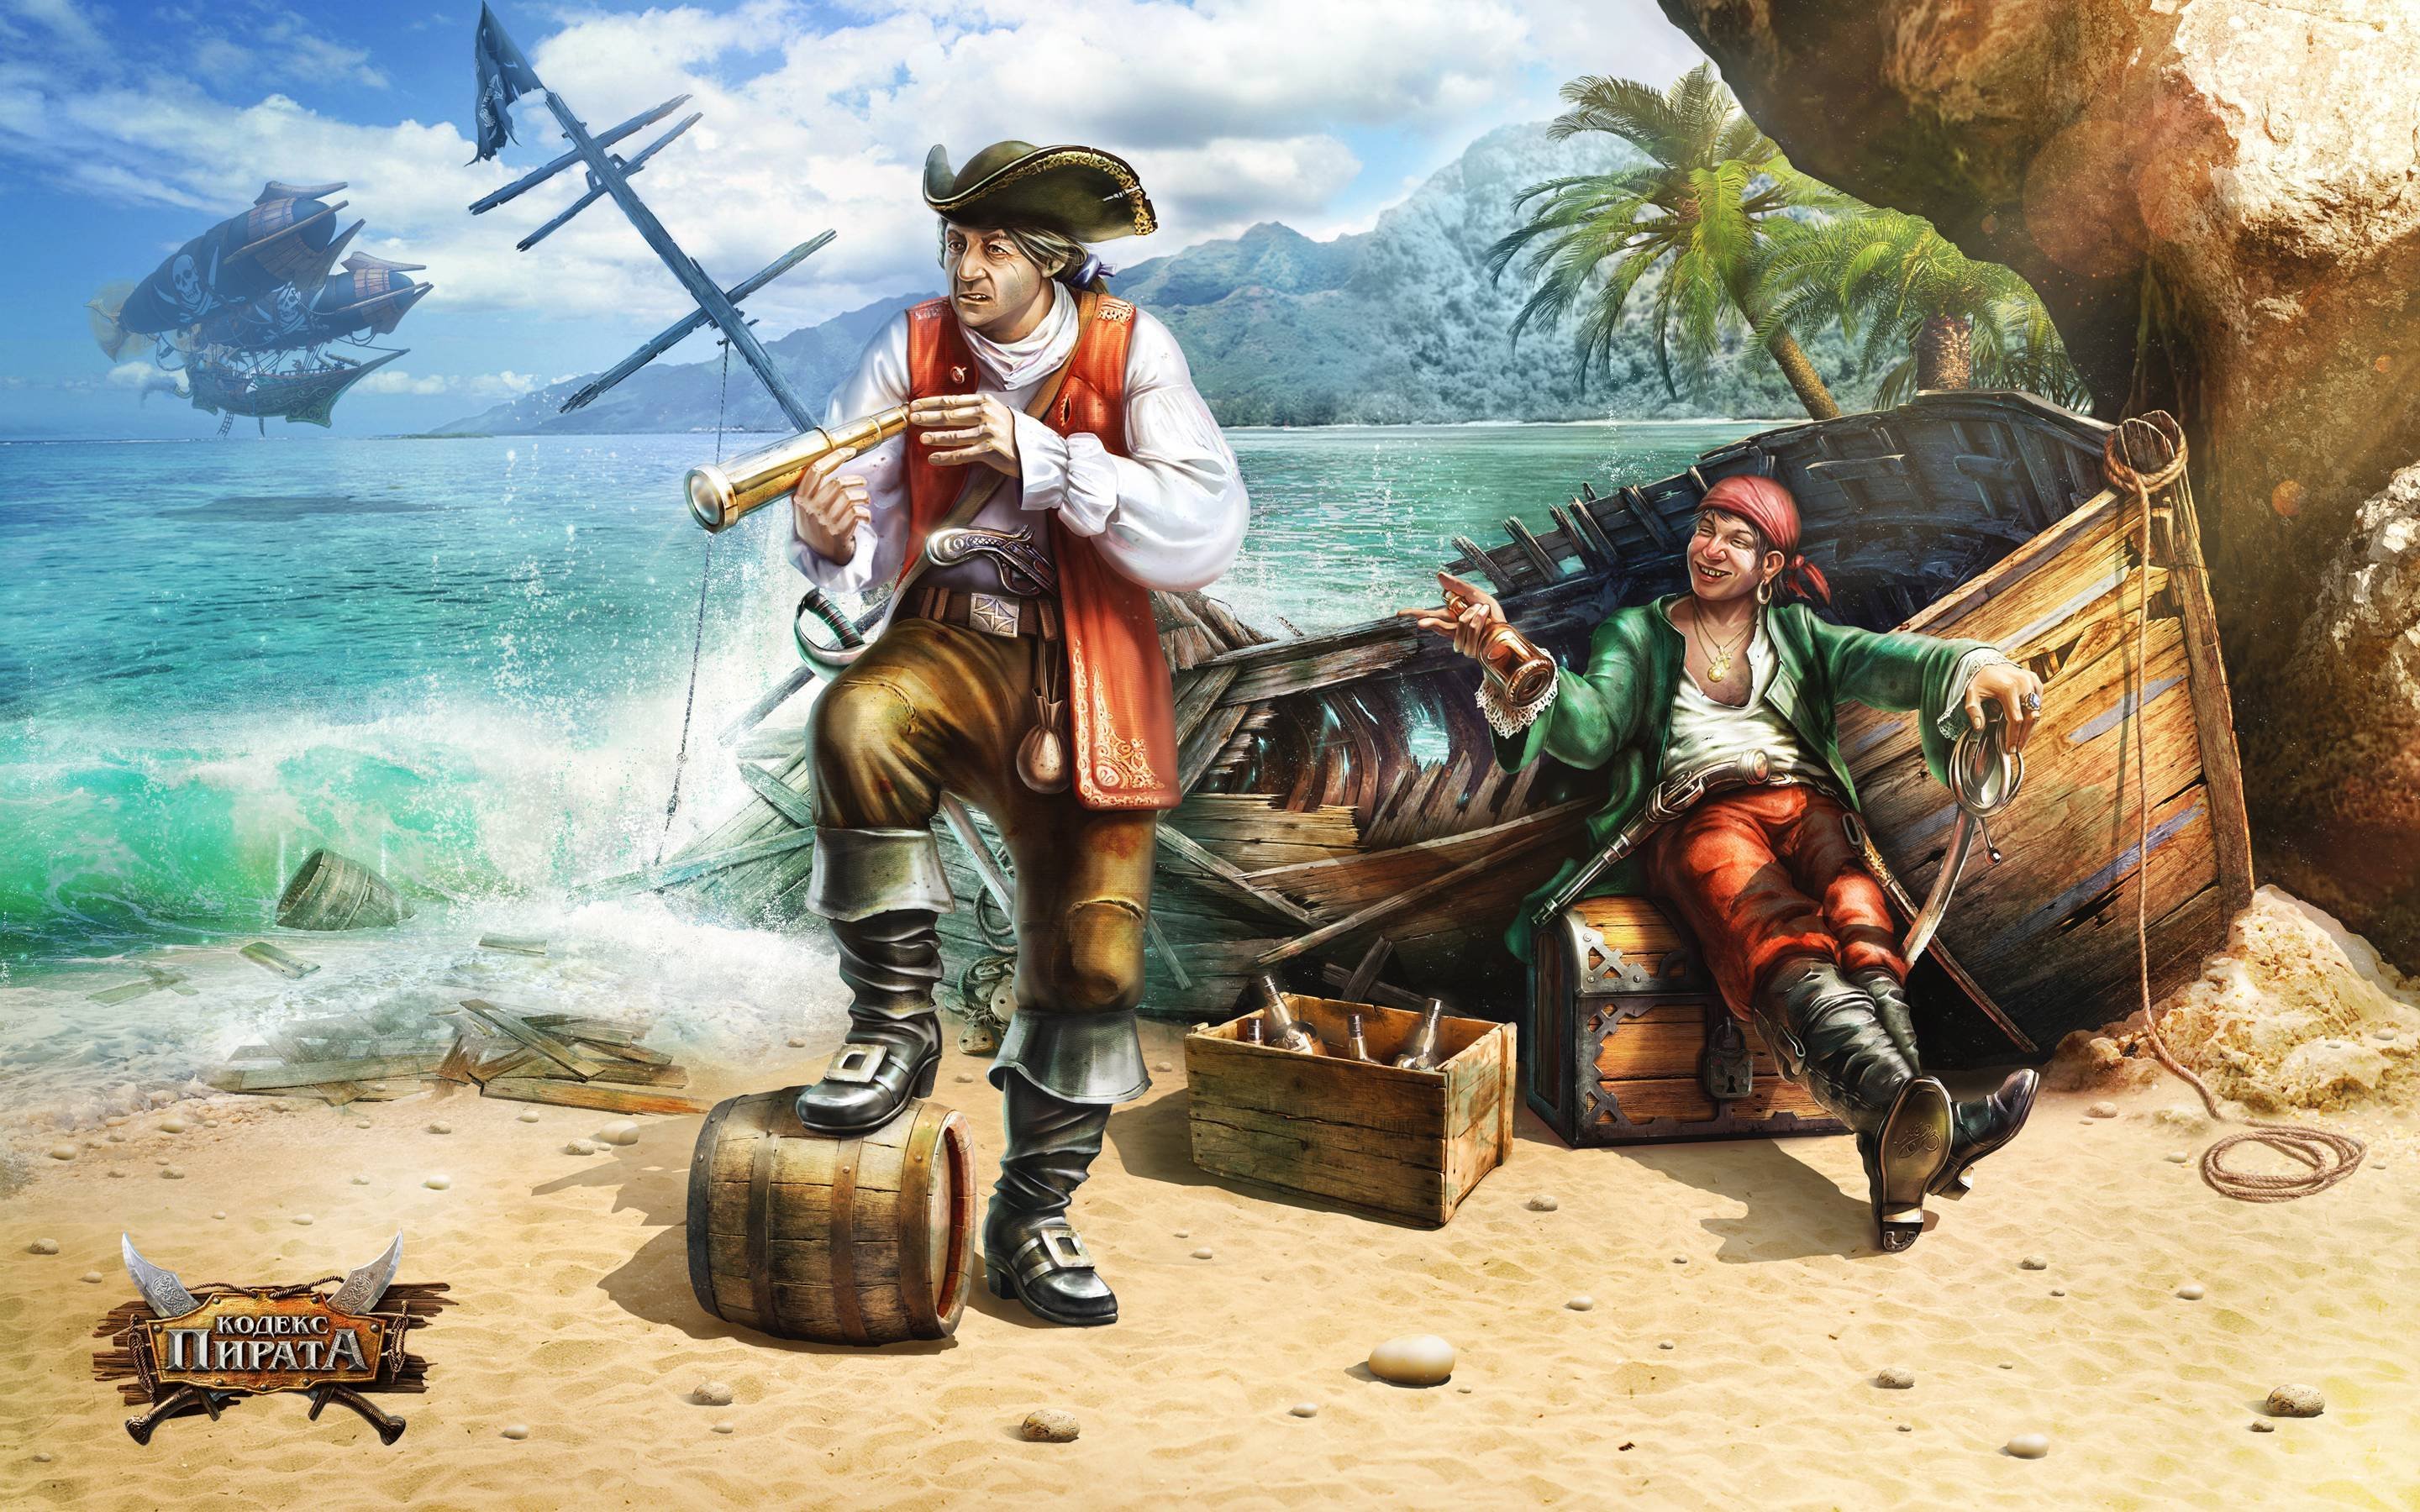 Остров пиратов. Стивенсон пираты остров сокровищ. Даниэль Монбар пират. Флибустьеры пираты Корсары. Пираты Корсары флибустьеры Жорж блон.